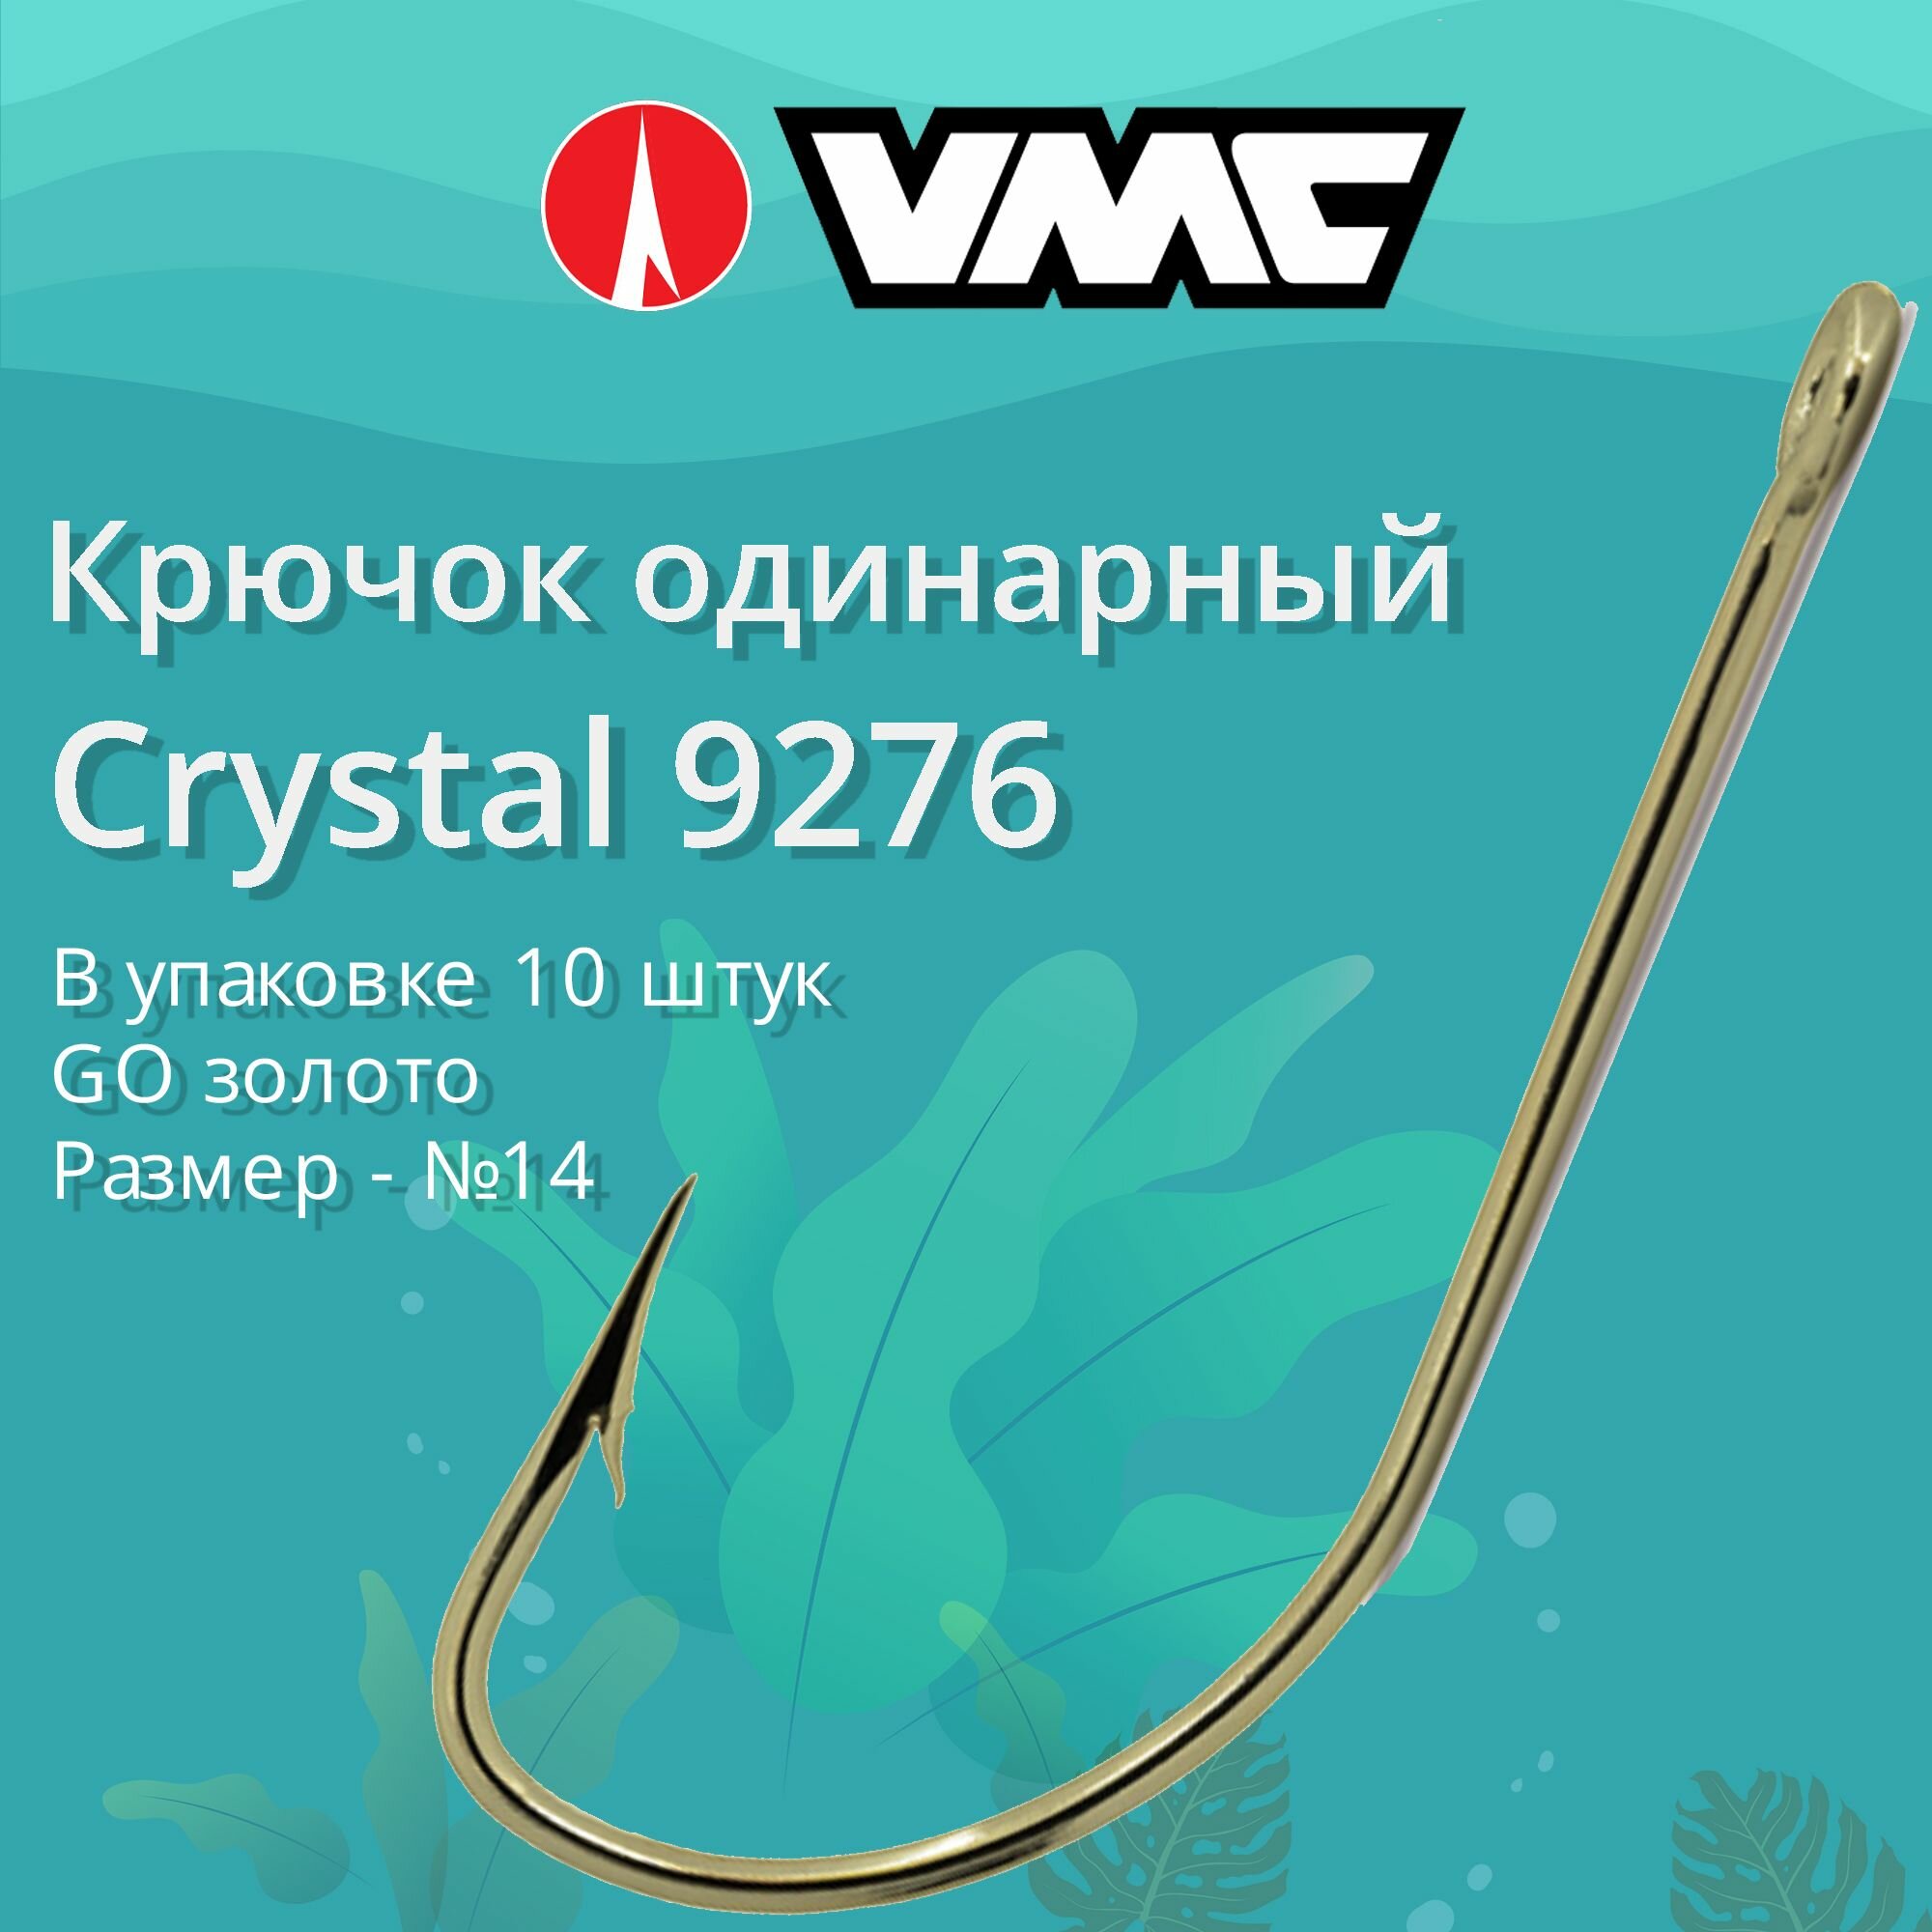 Крючки для рыбалки (одинарный) VMC Crystal 9276 GO (золото) №14 упаковка 10 штук